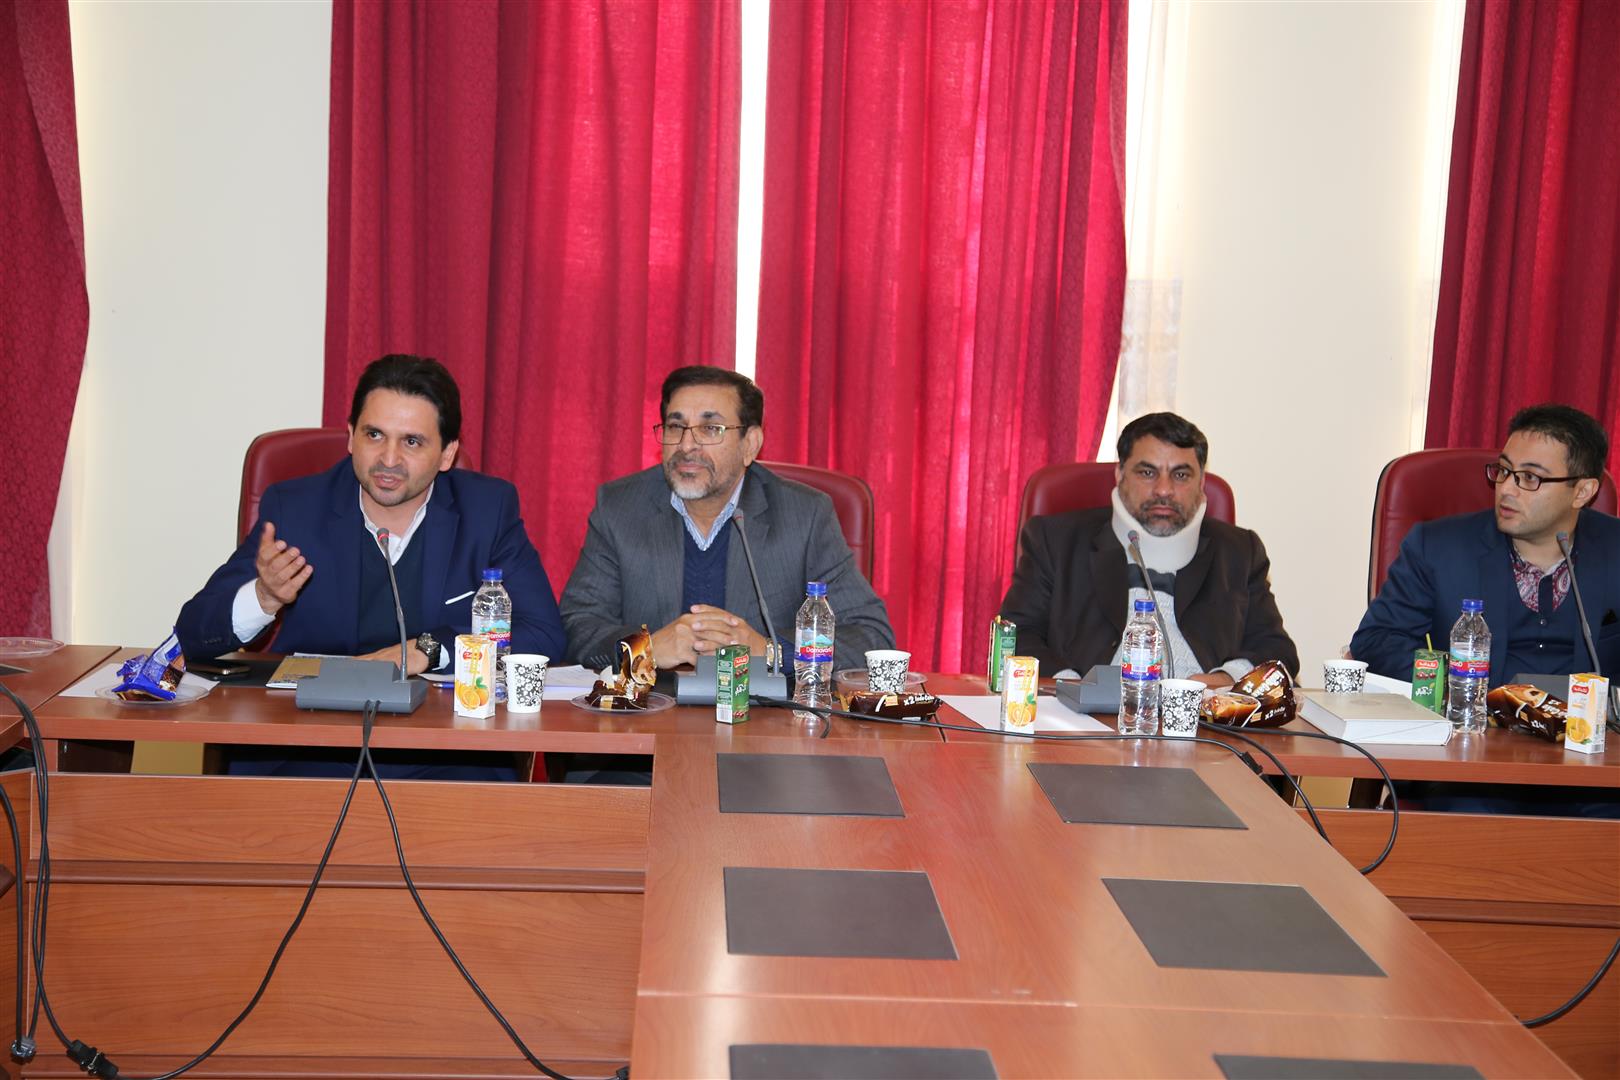 جلسه فرماندهان بسیج سازمان میراث فرهنگی در سعدآباد برگزار شد